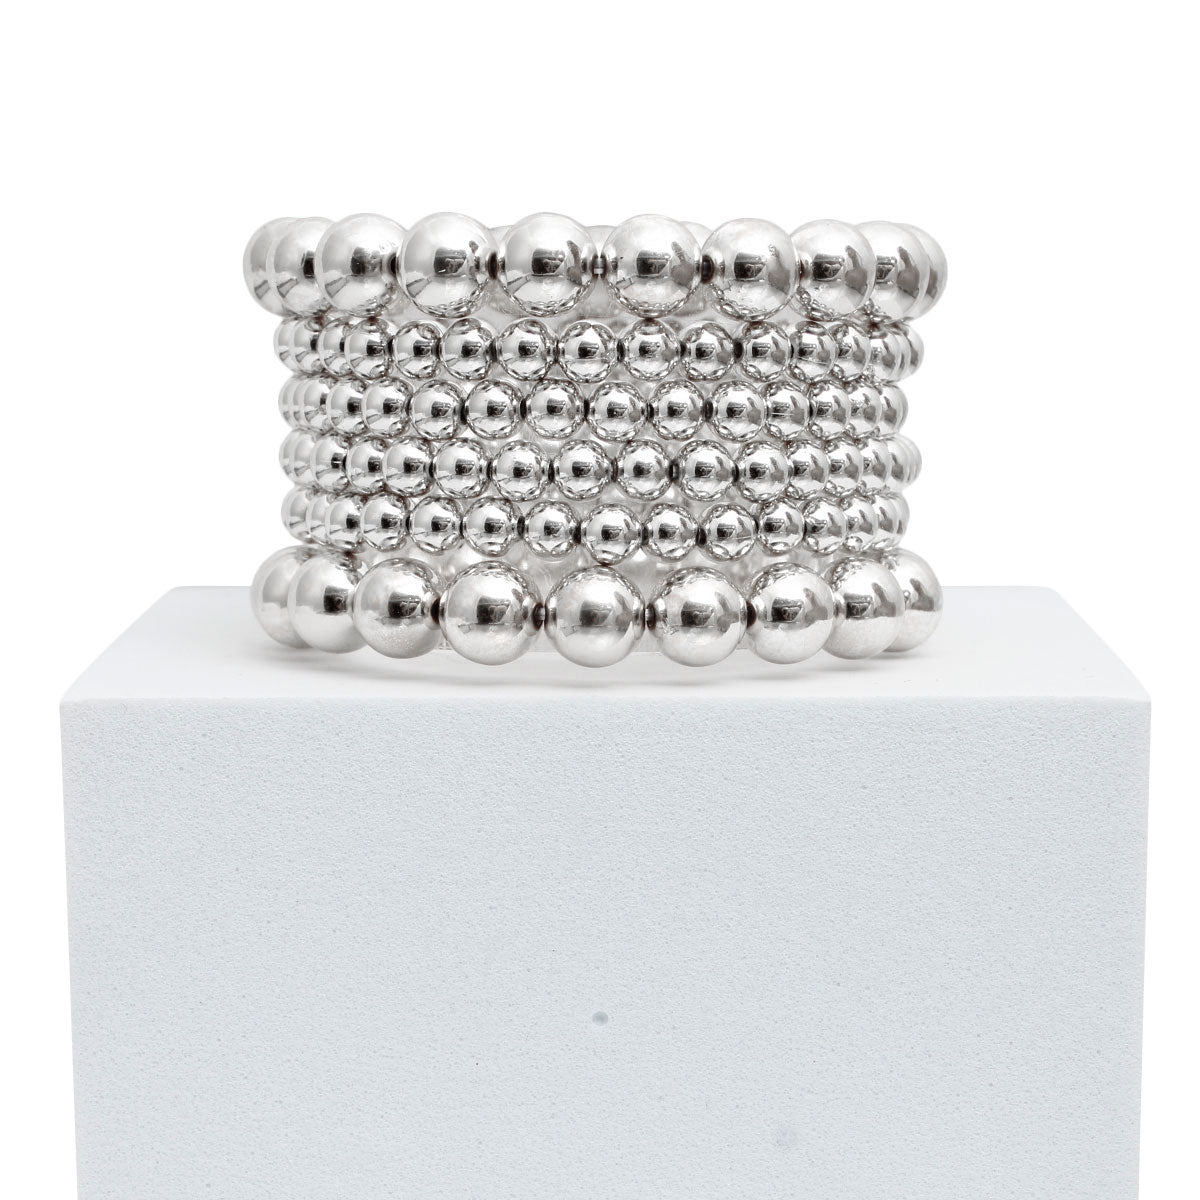 6 Pcs Silver Metal Ball Bead Bracelets